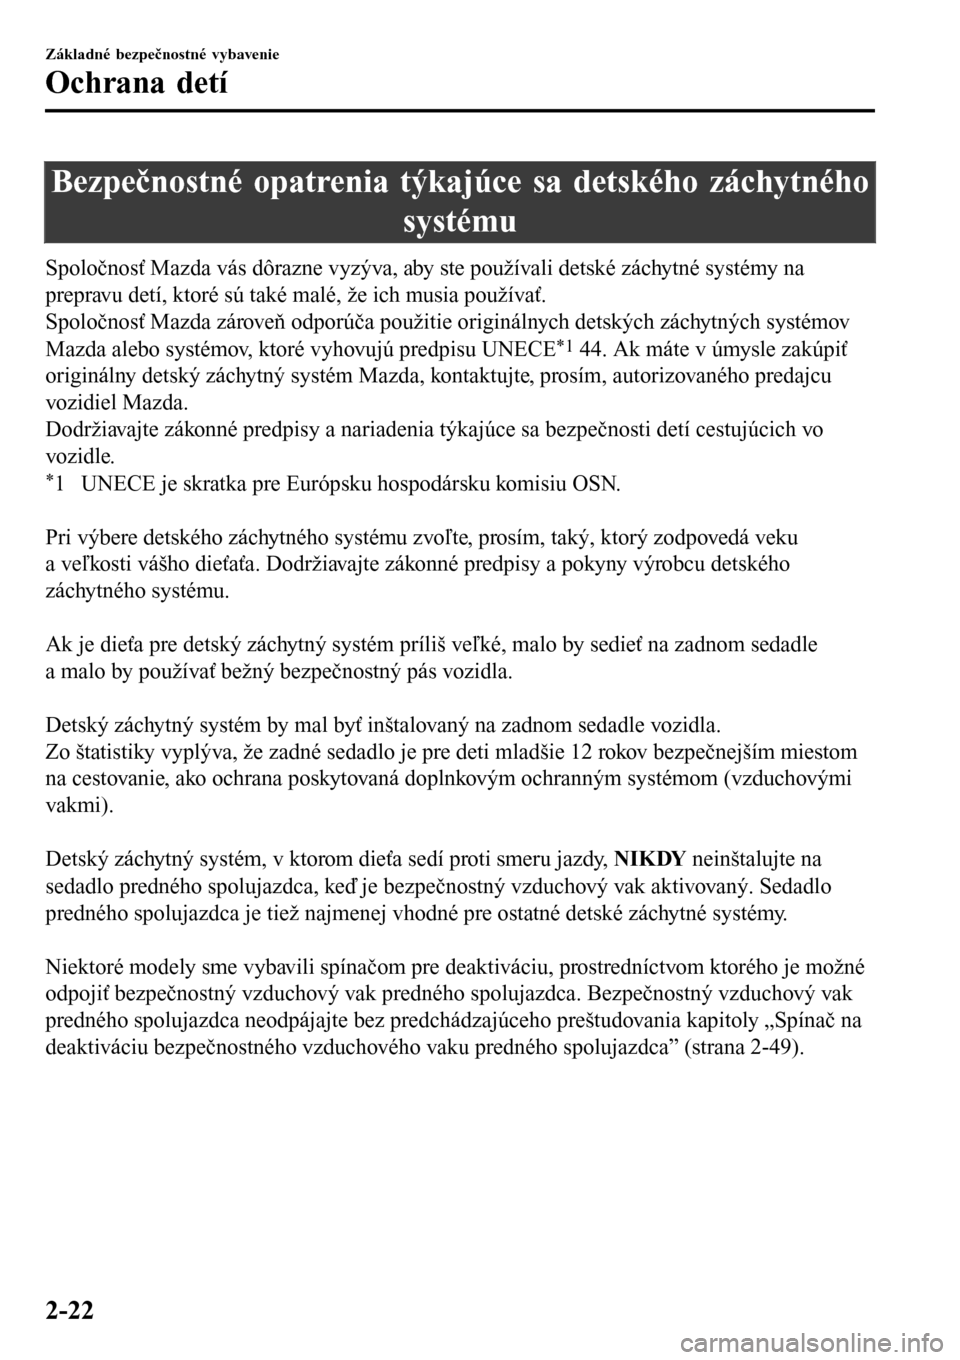 MAZDA MODEL 3 HATCHBACK 2016  Užívateľská príručka (in Slovak) Bezpečnostné opatrenia týkajúce sa detského záchytného
systému
Spoločnosť Mazda vás dôrazne vyzýva, aby ste používali detské záchytné systémy na
prepravu detí, ktoré sú také mal